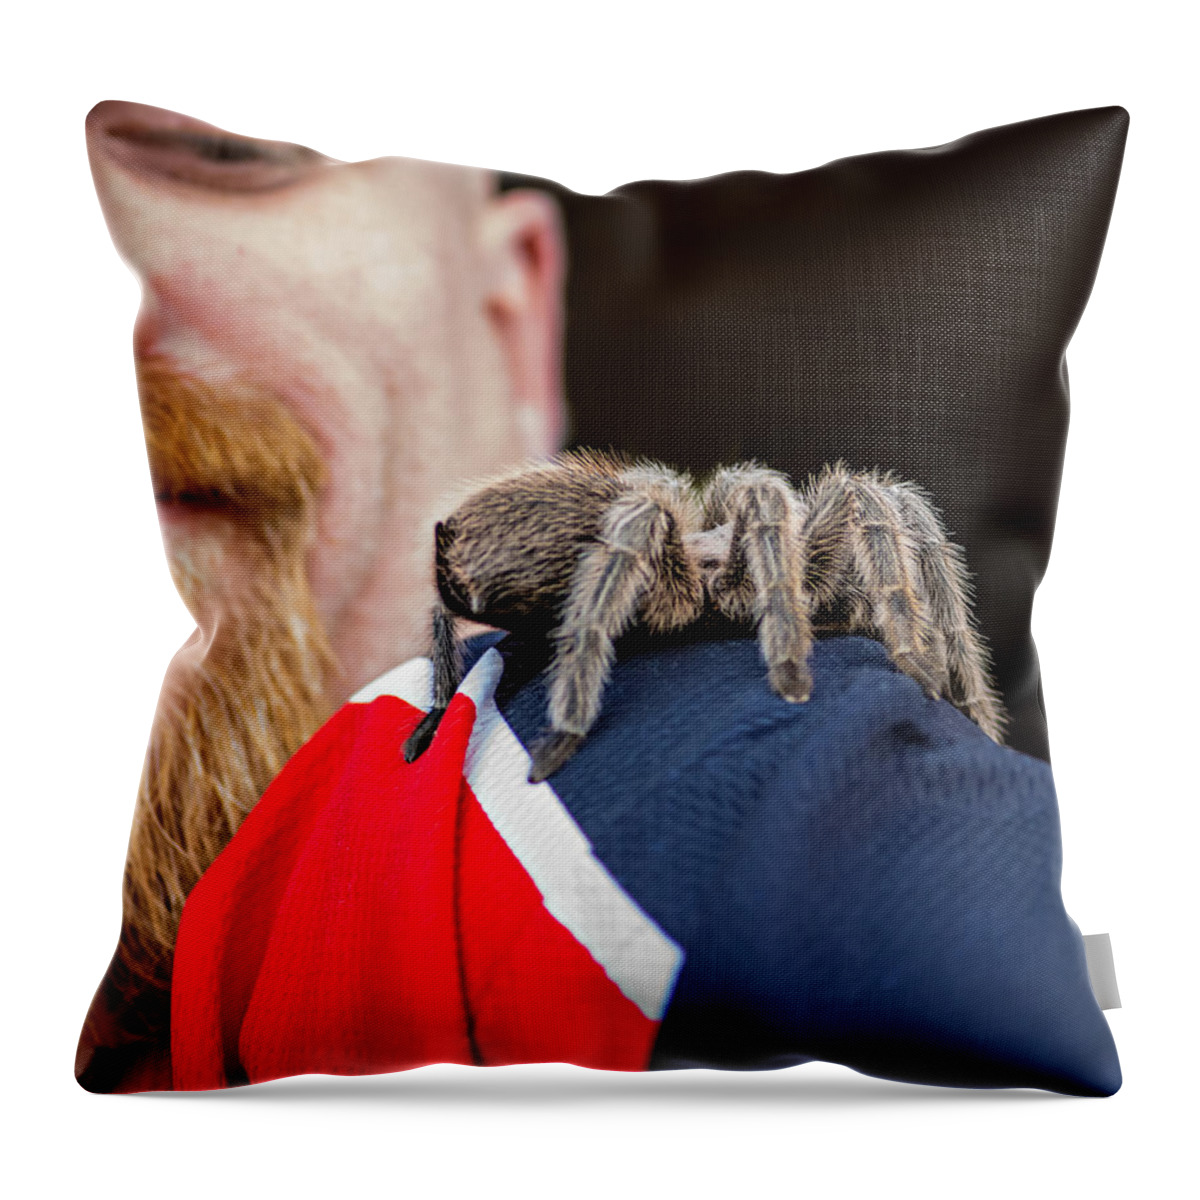 Steve Harrington Throw Pillow featuring the photograph Tarantula Love by Steve Harrington